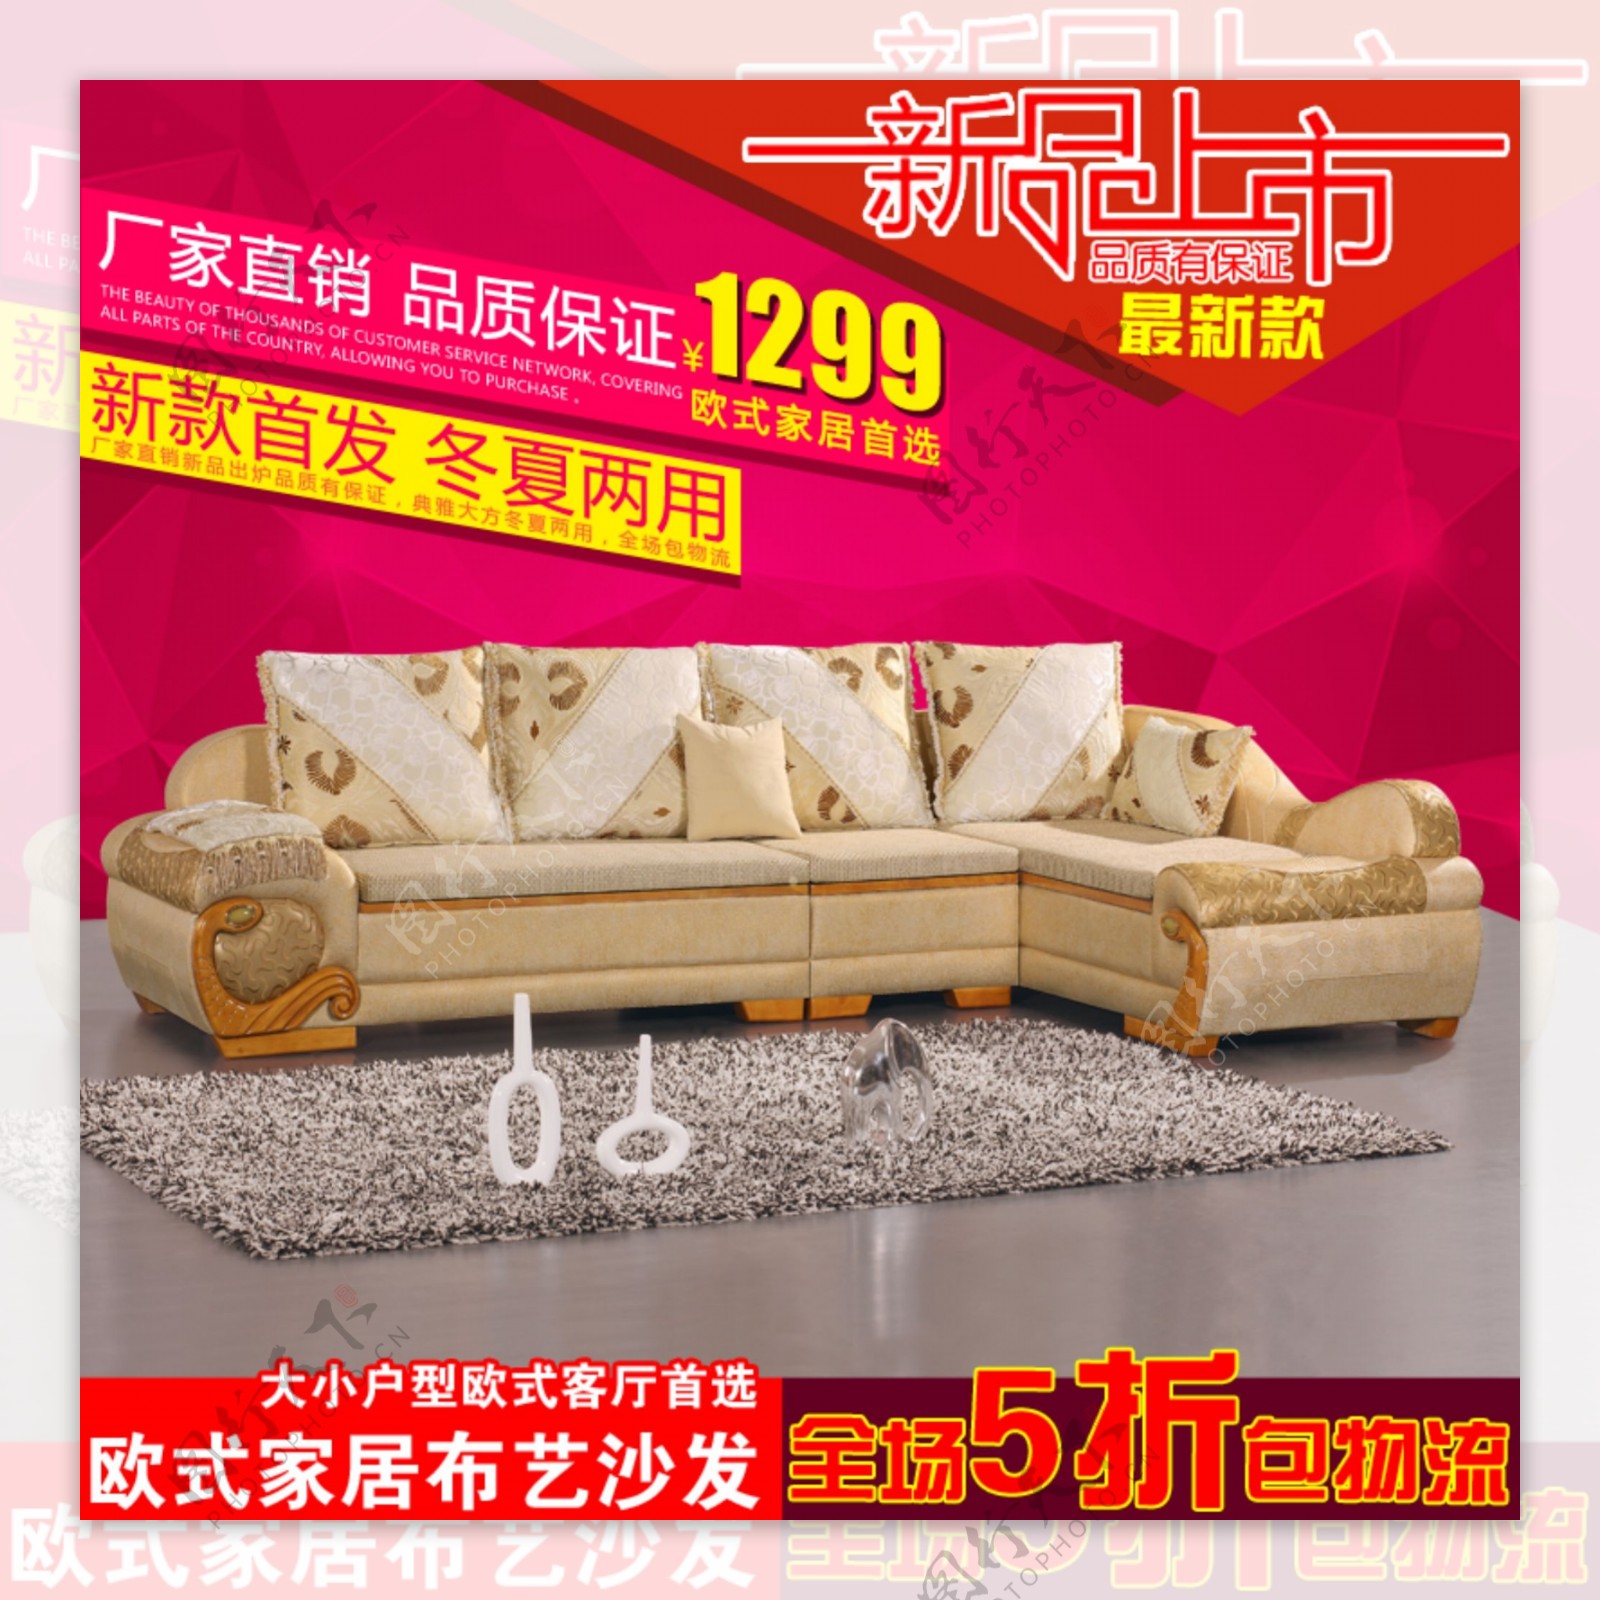 家具淘宝天猫主图沙发促销直通车图模板